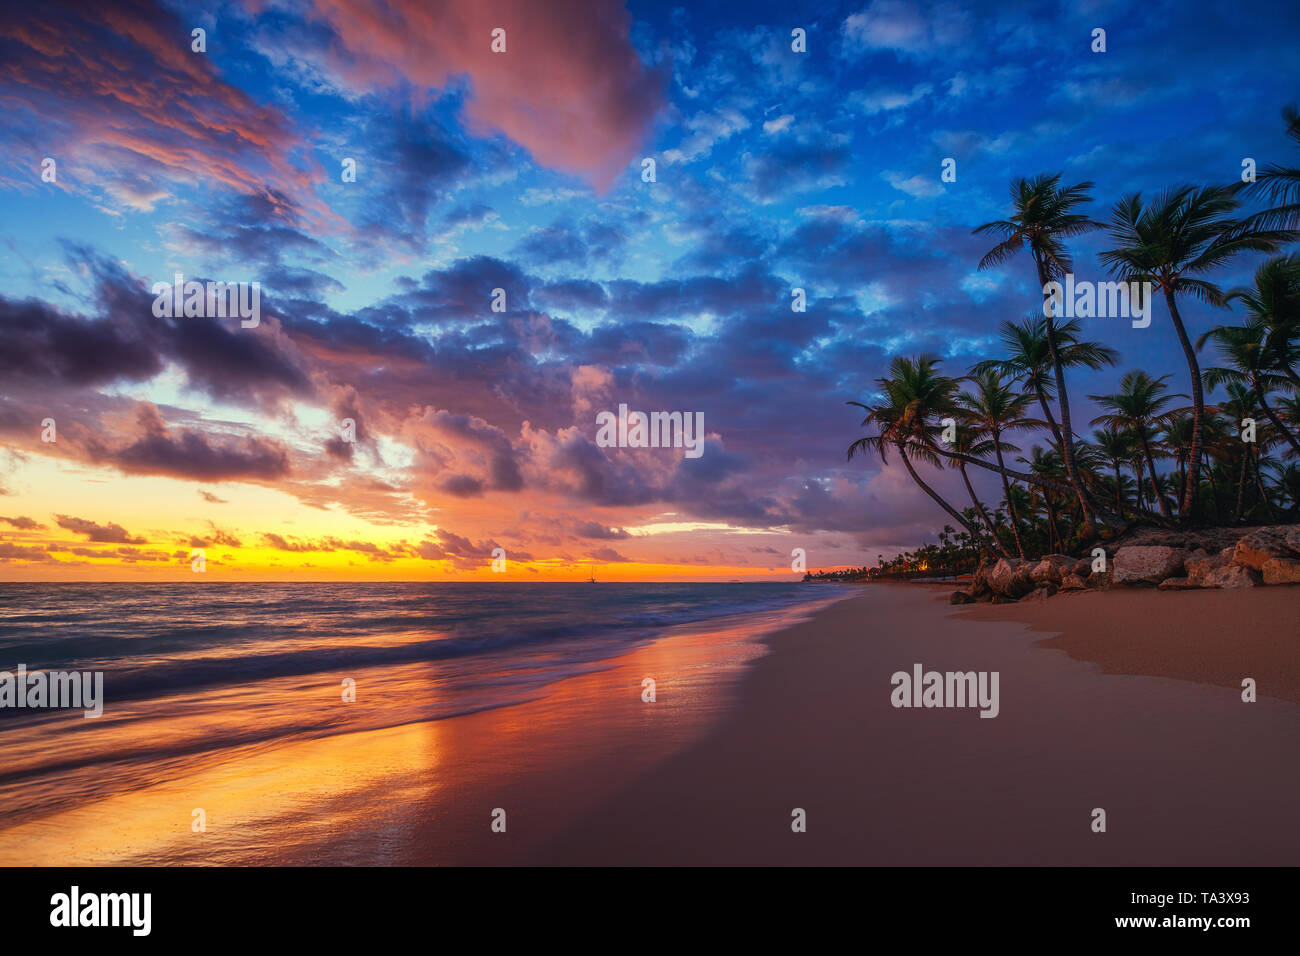 Paysage de paradise tropical island beach, sunrise shot. Banque D'Images